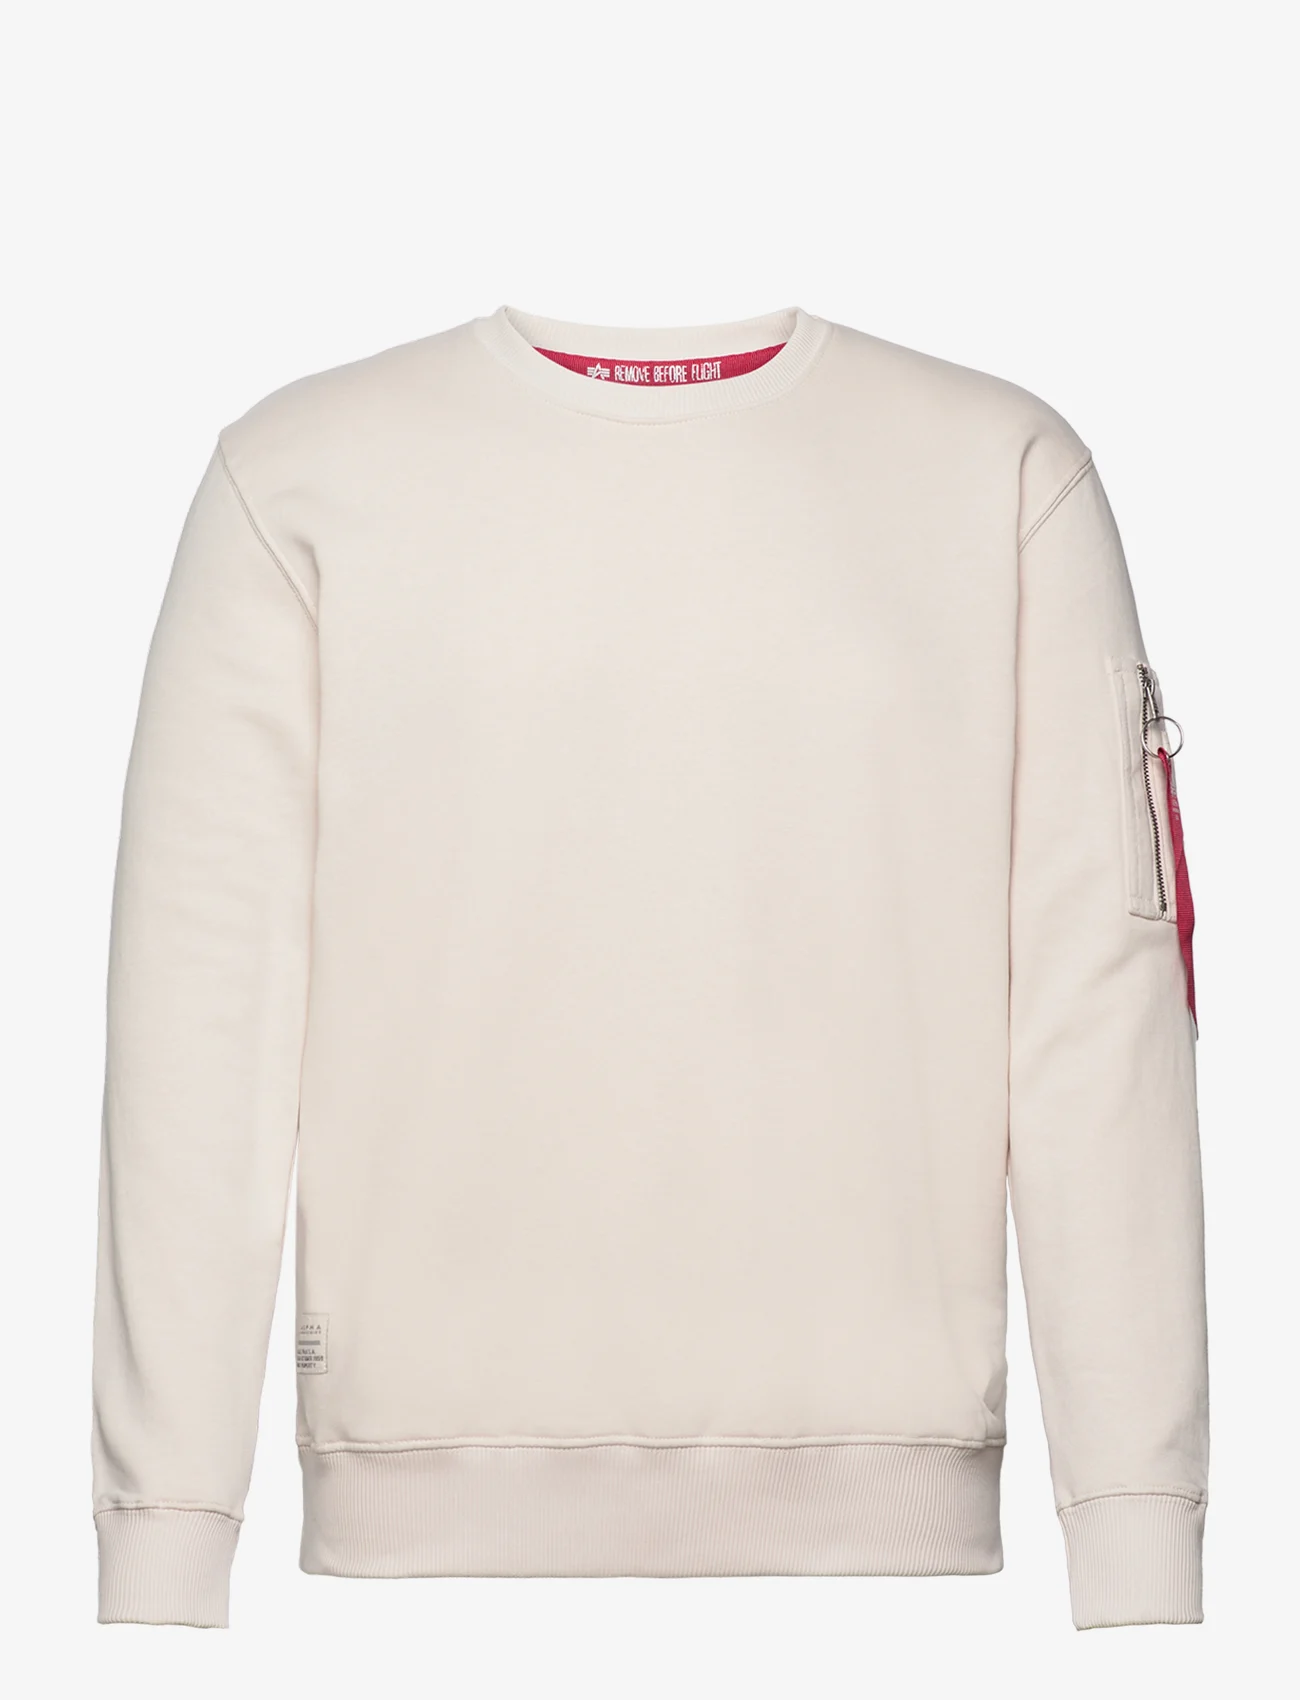 Alpha Industries - USN Blood Chit Sweater - kläder - jet stream white - 0